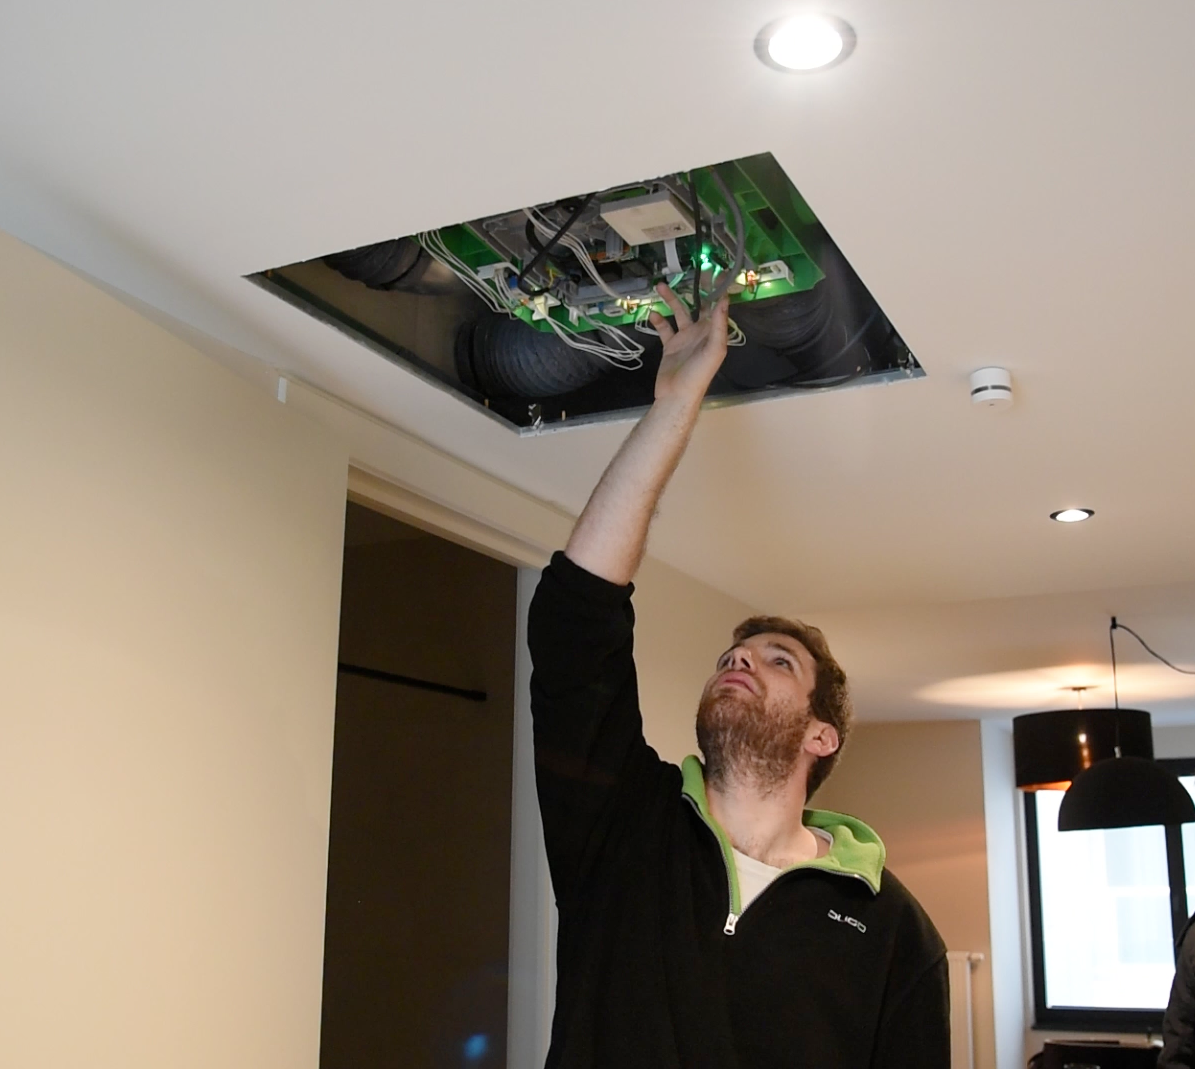 DUCO installateur installeert DucoBox in het plafond